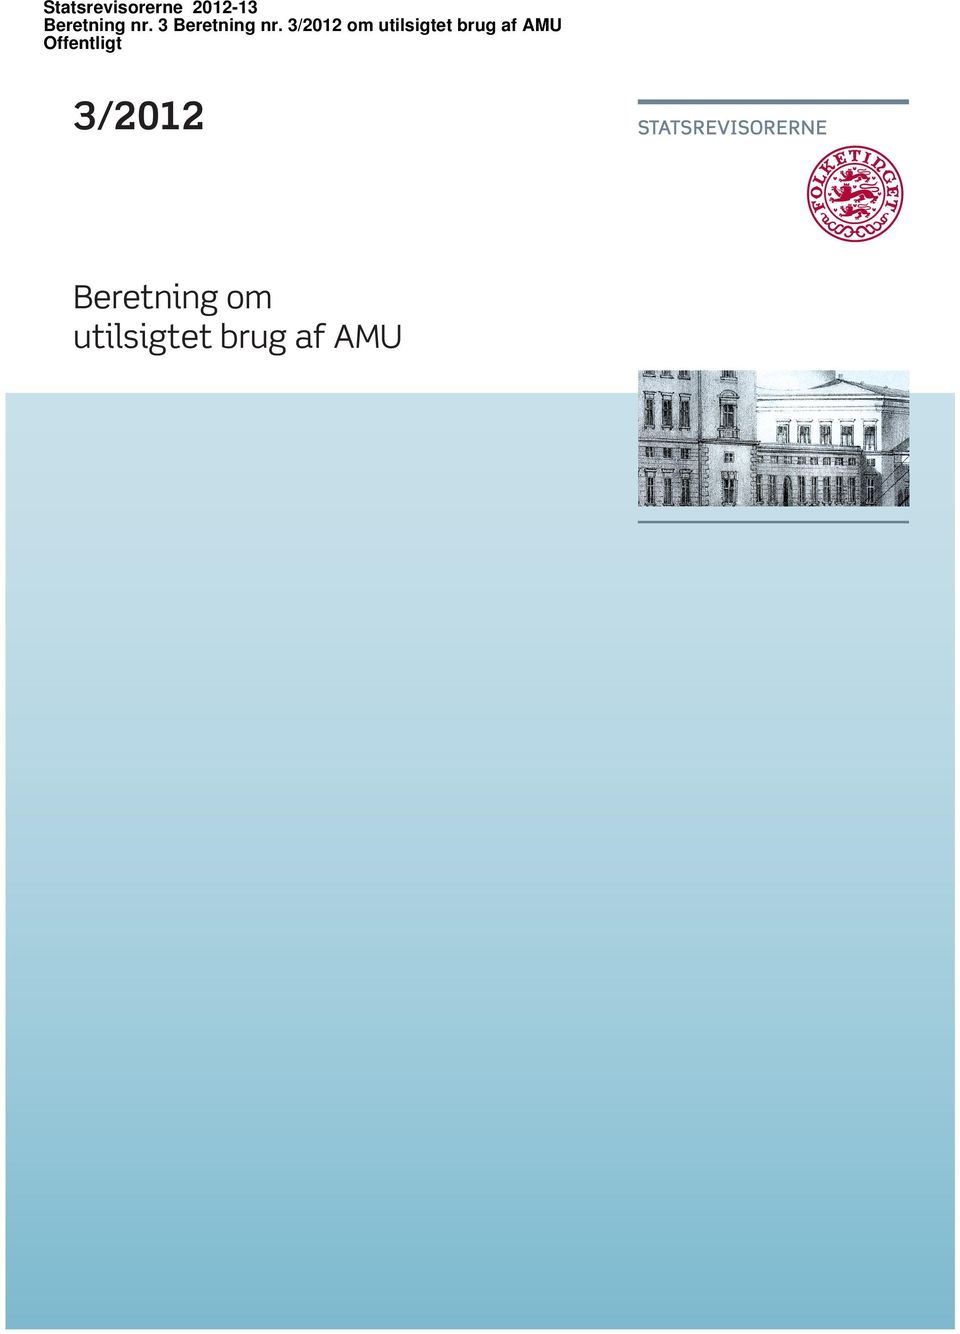 3/2012 om utilsigtet brug af AMU